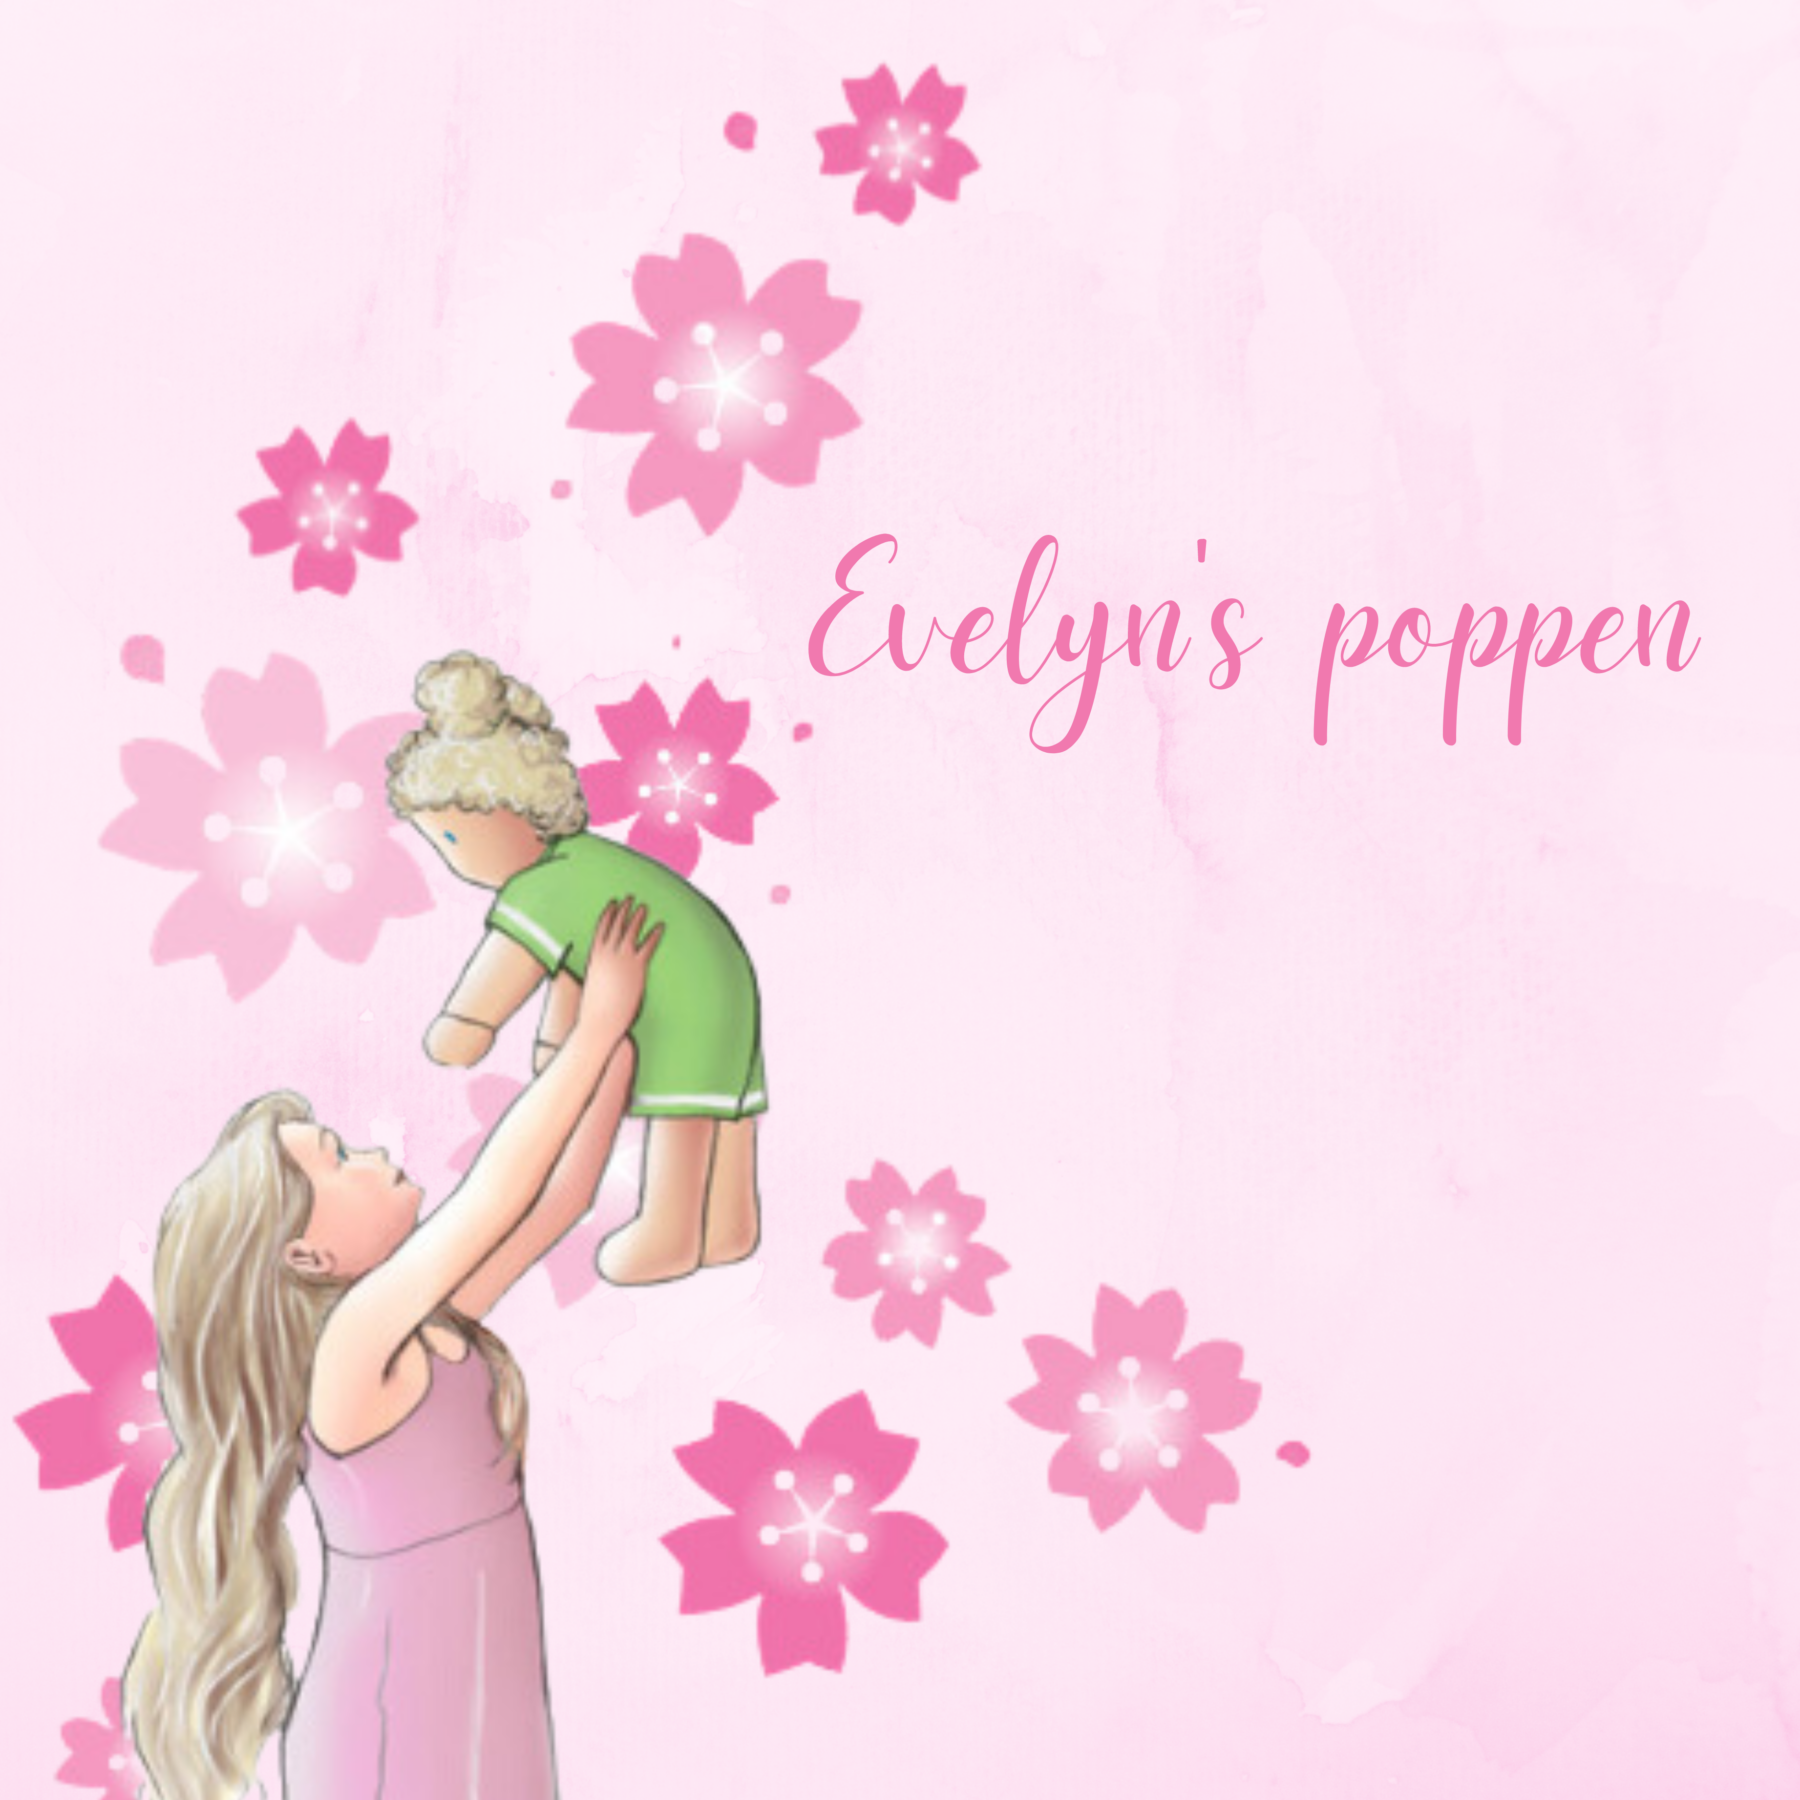 Evelyn's poppen